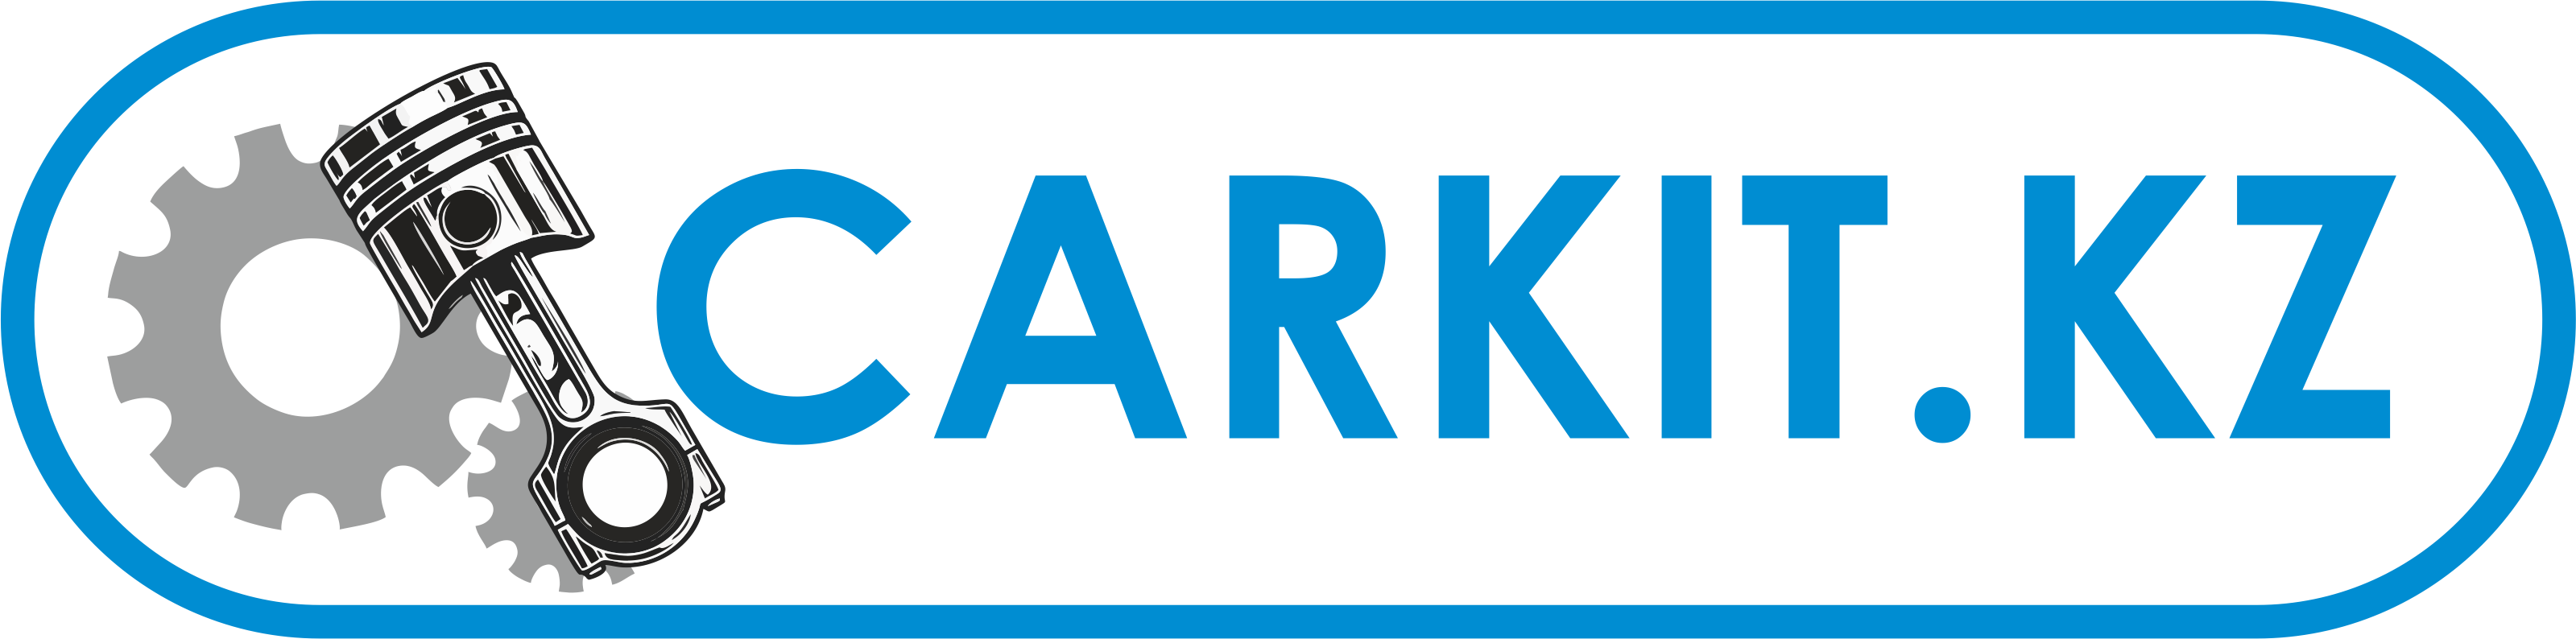 логотип компании www.carkit.kz